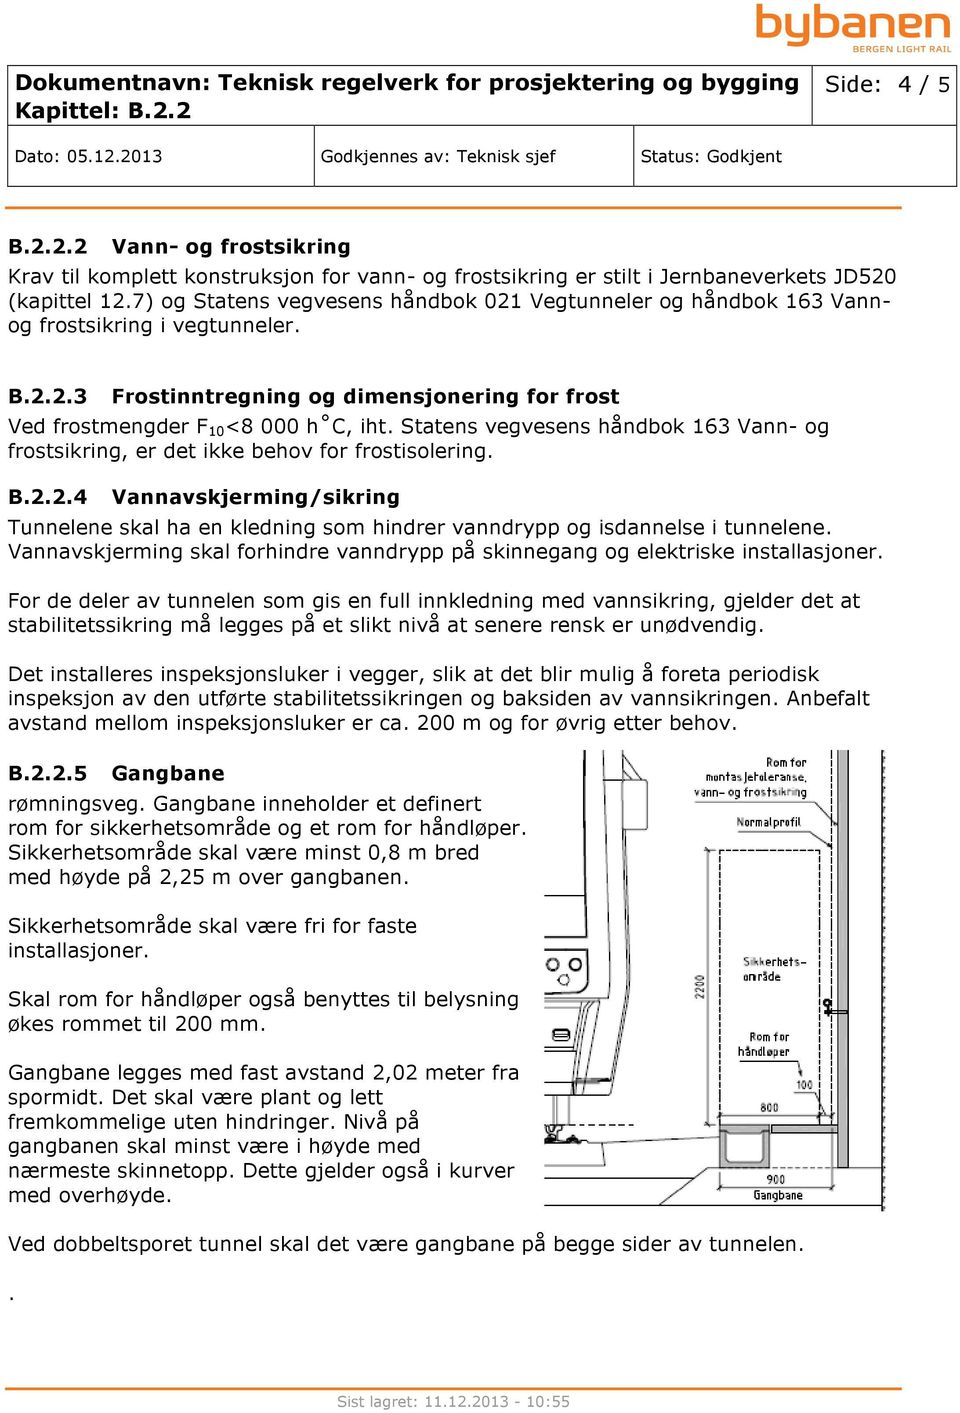 Statens vegvesens håndbok 163 Vann- og frostsikring, er det ikke behov for frostisolering. B.2.2.4 Vannavskjerming/sikring Tunnelene skal ha en kledning som hindrer vanndrypp og isdannelse i tunnelene.